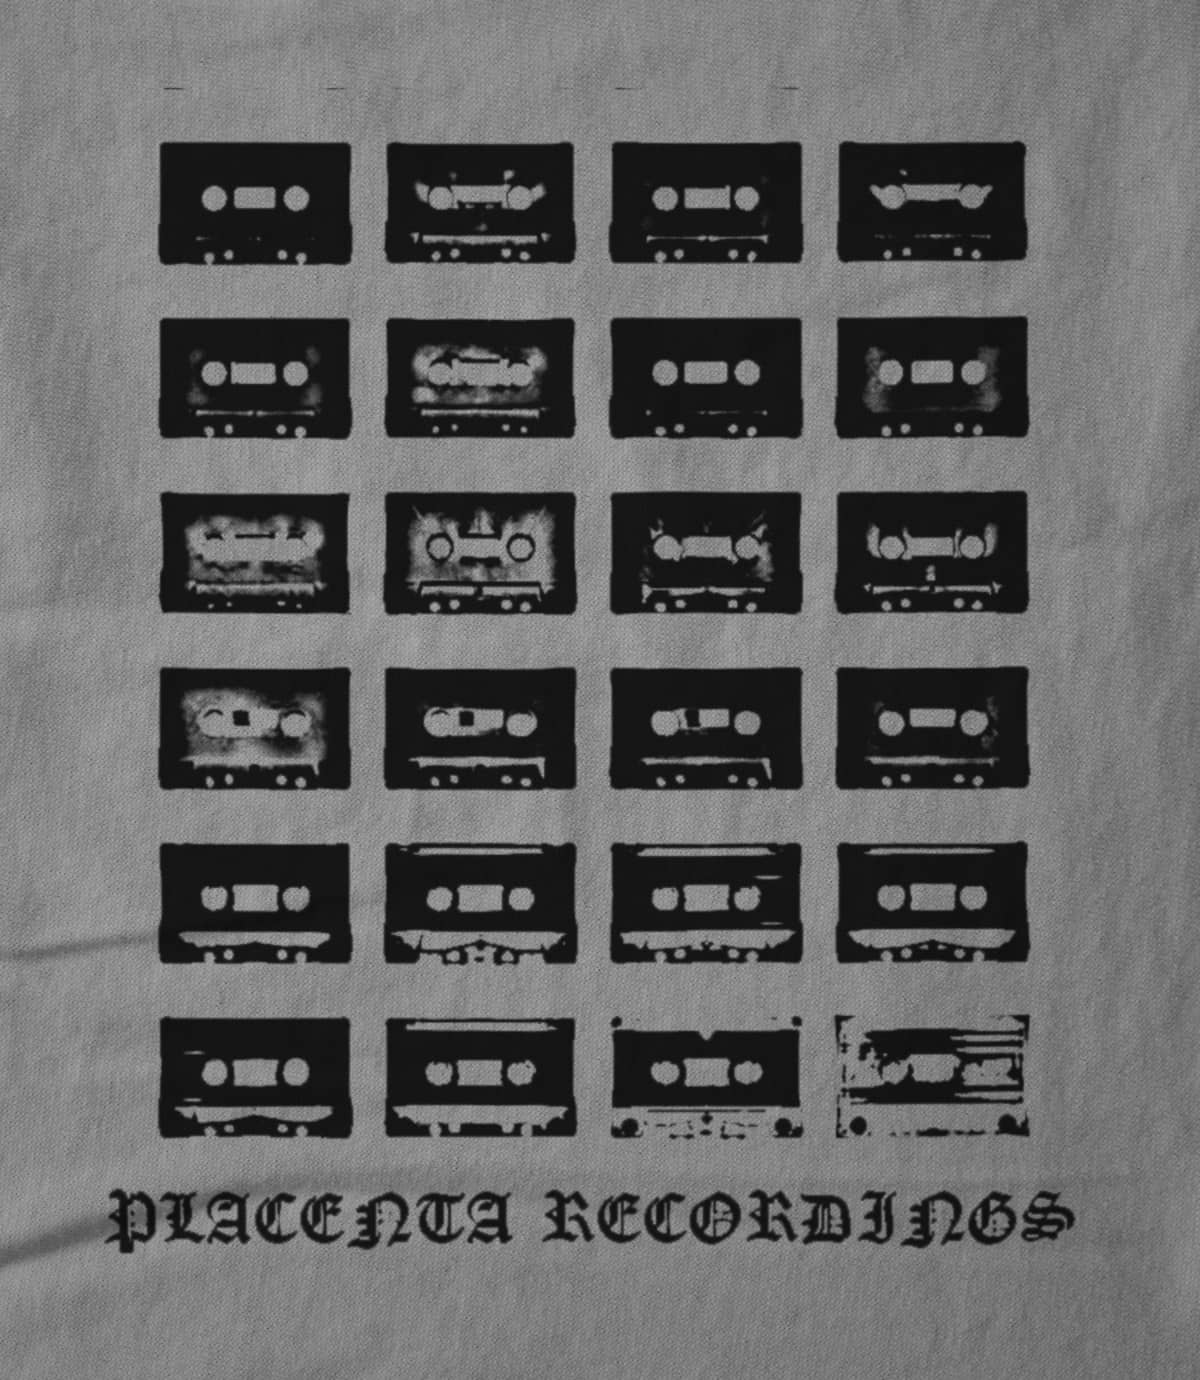 Placenta Recordings